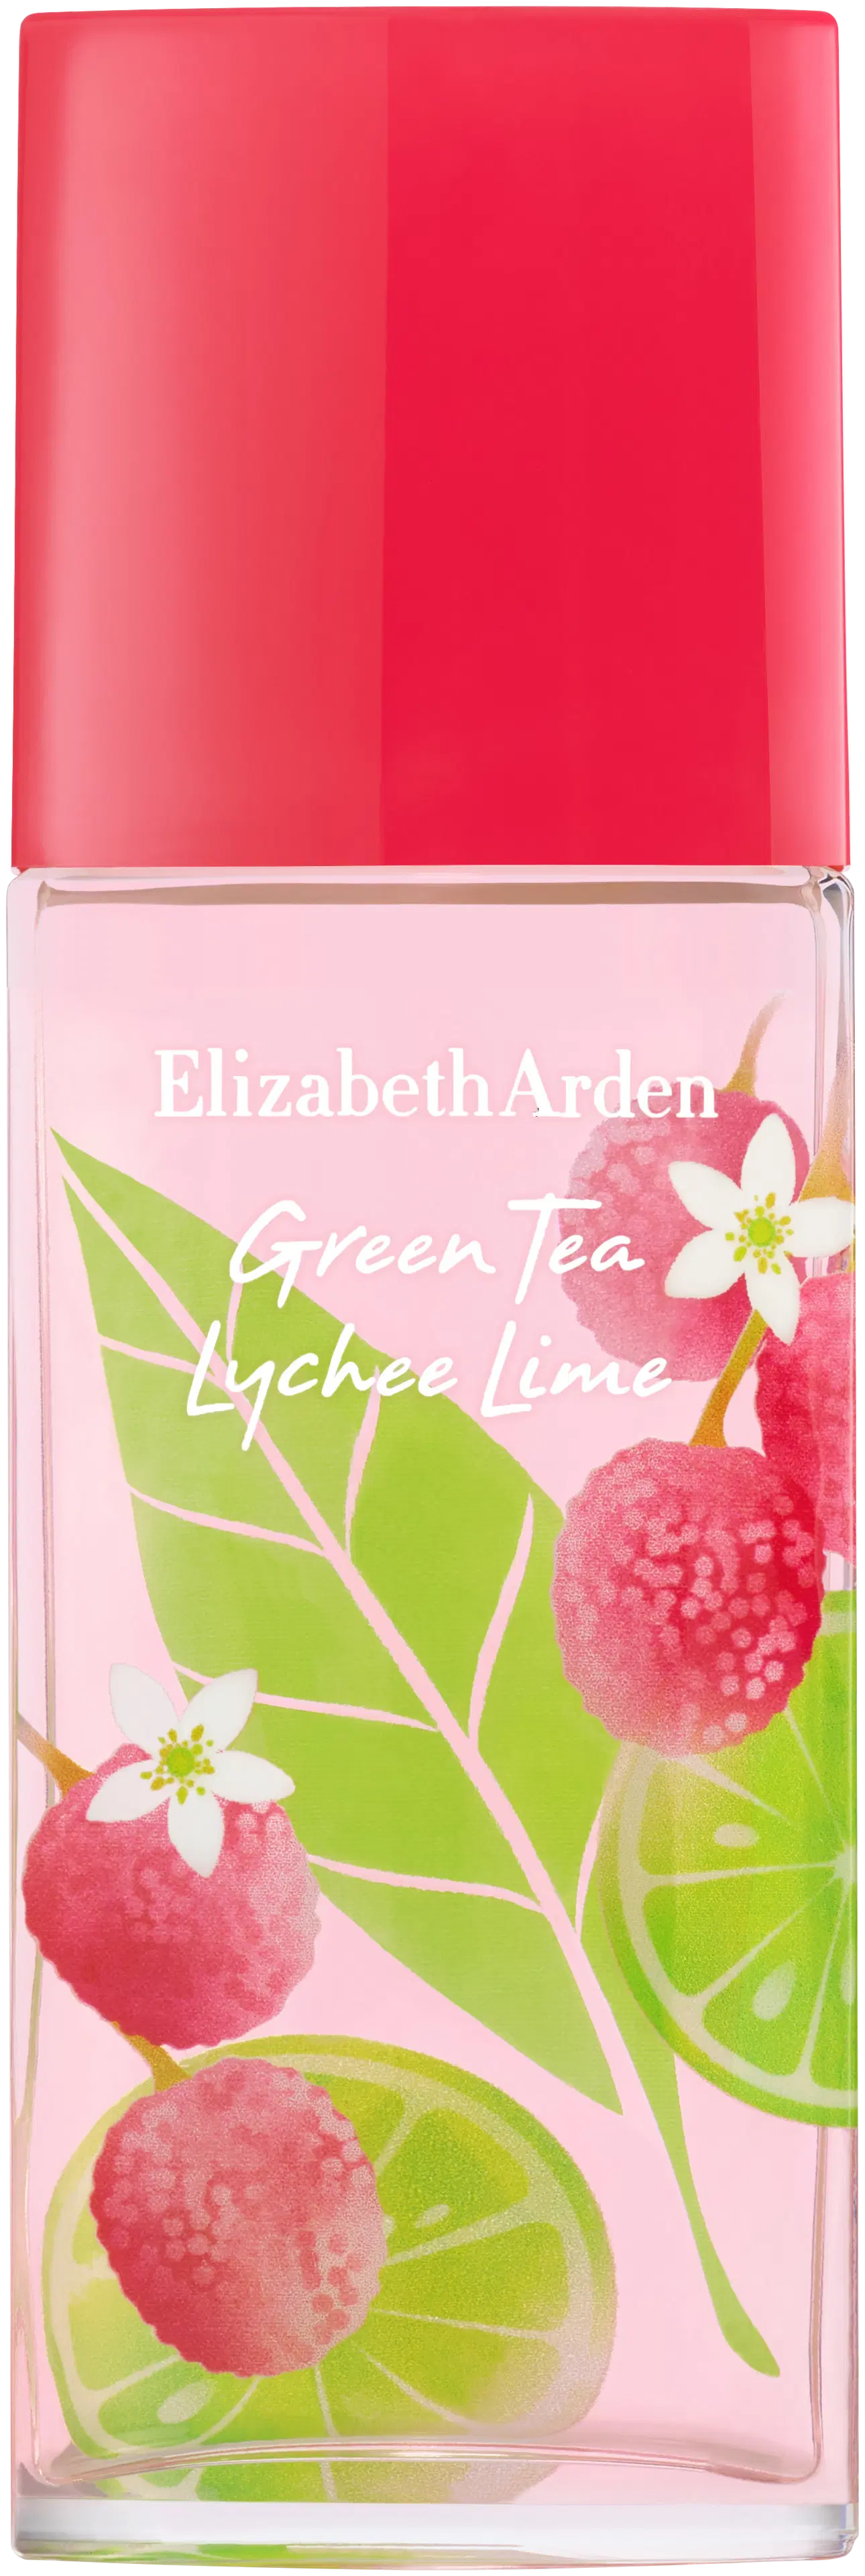 Elizabeth Arden Green Tea Lychee Lime EdT 50 ml tuoksu